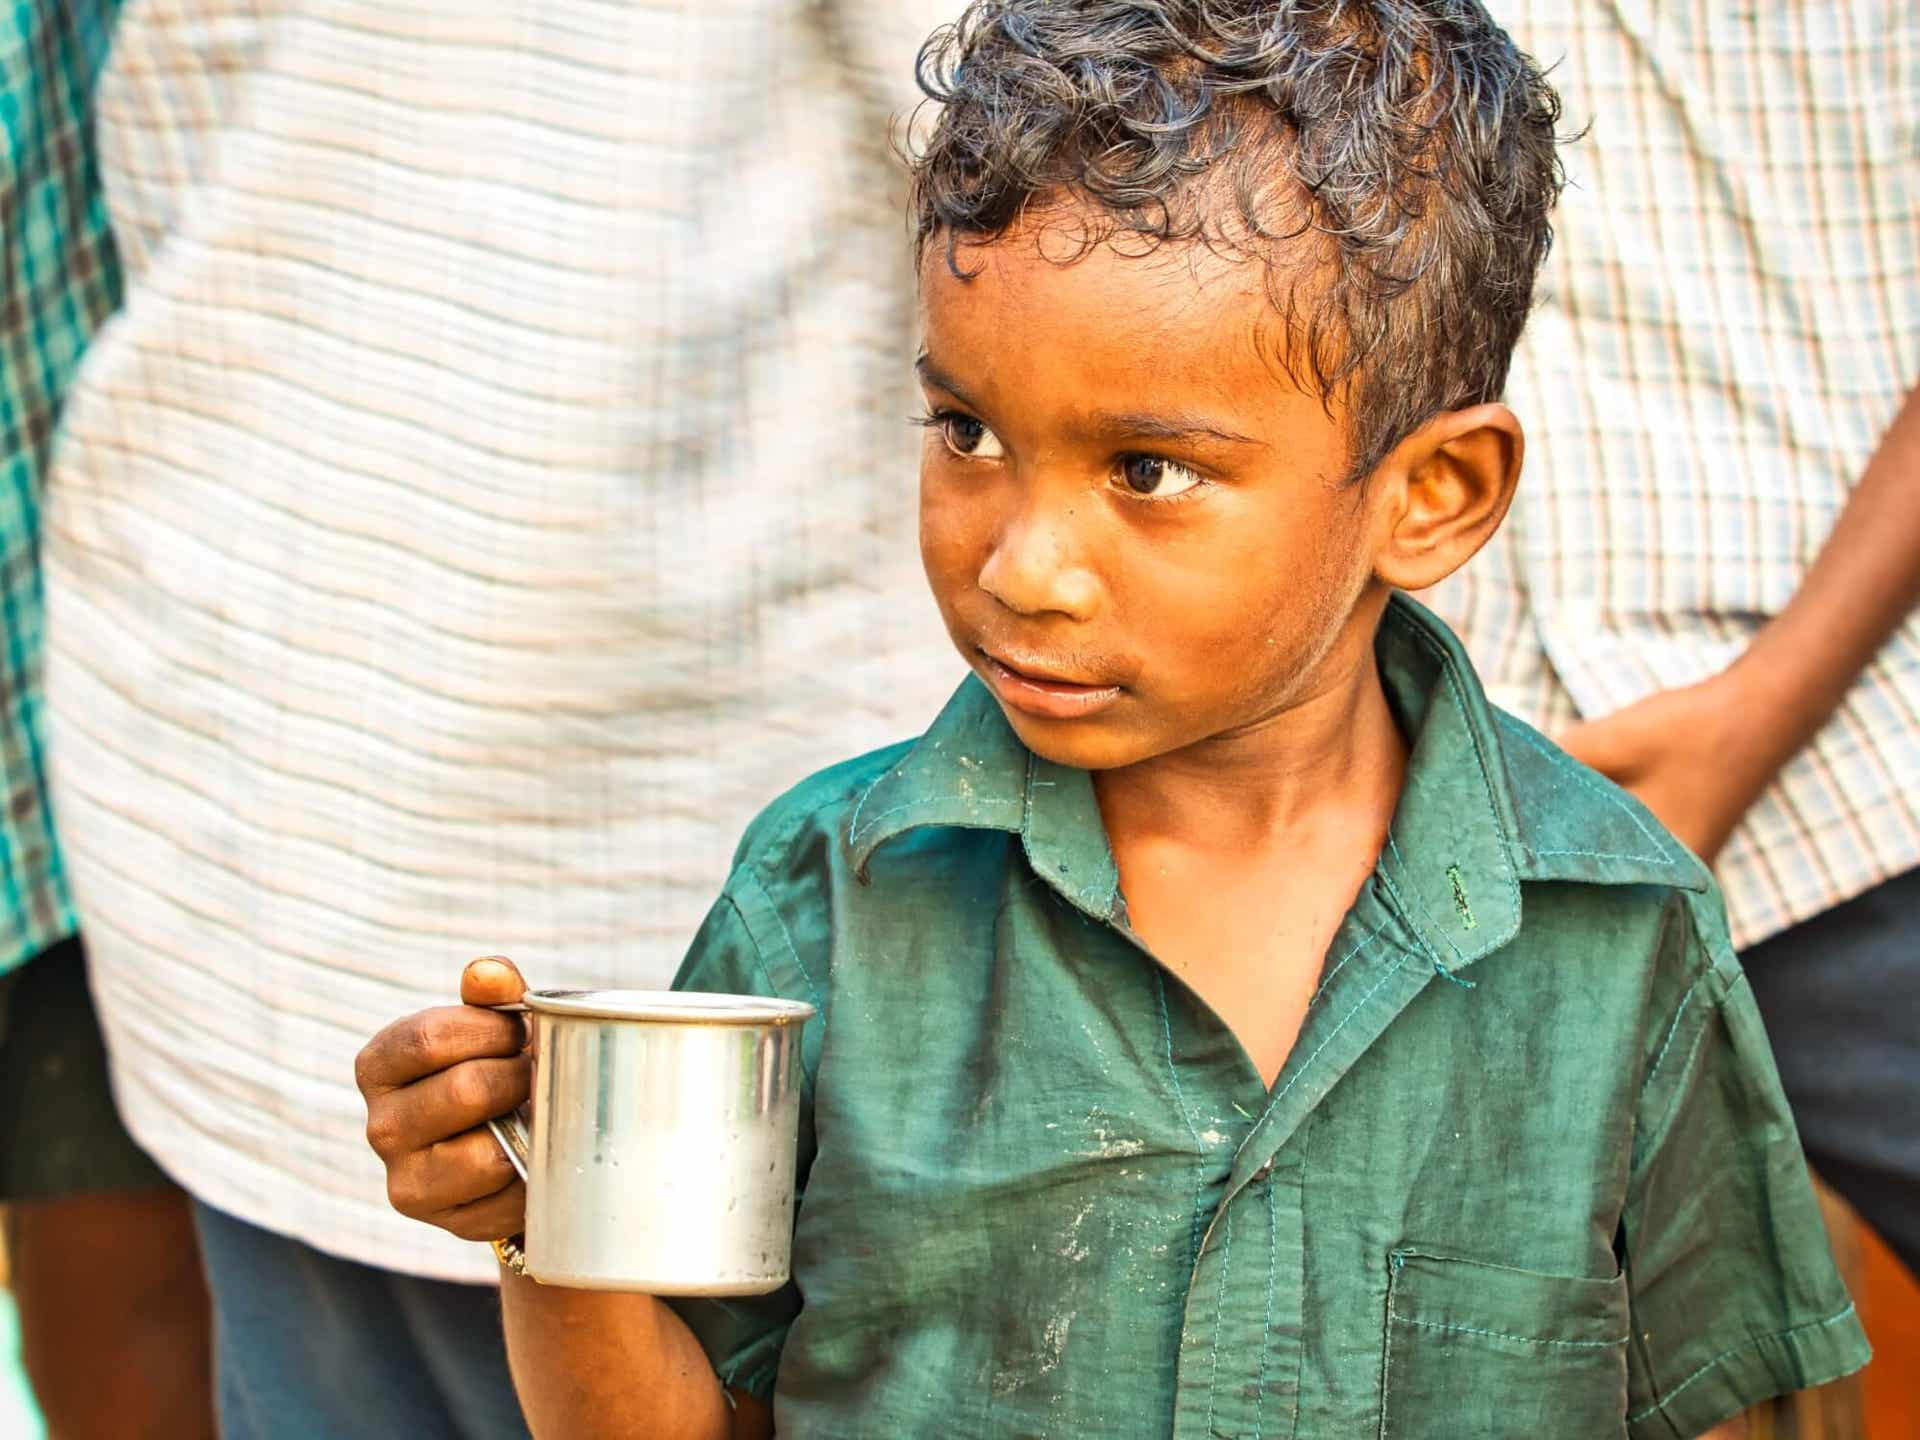 Welternährungstag - Junge mit einem Blechbecher in der Hand